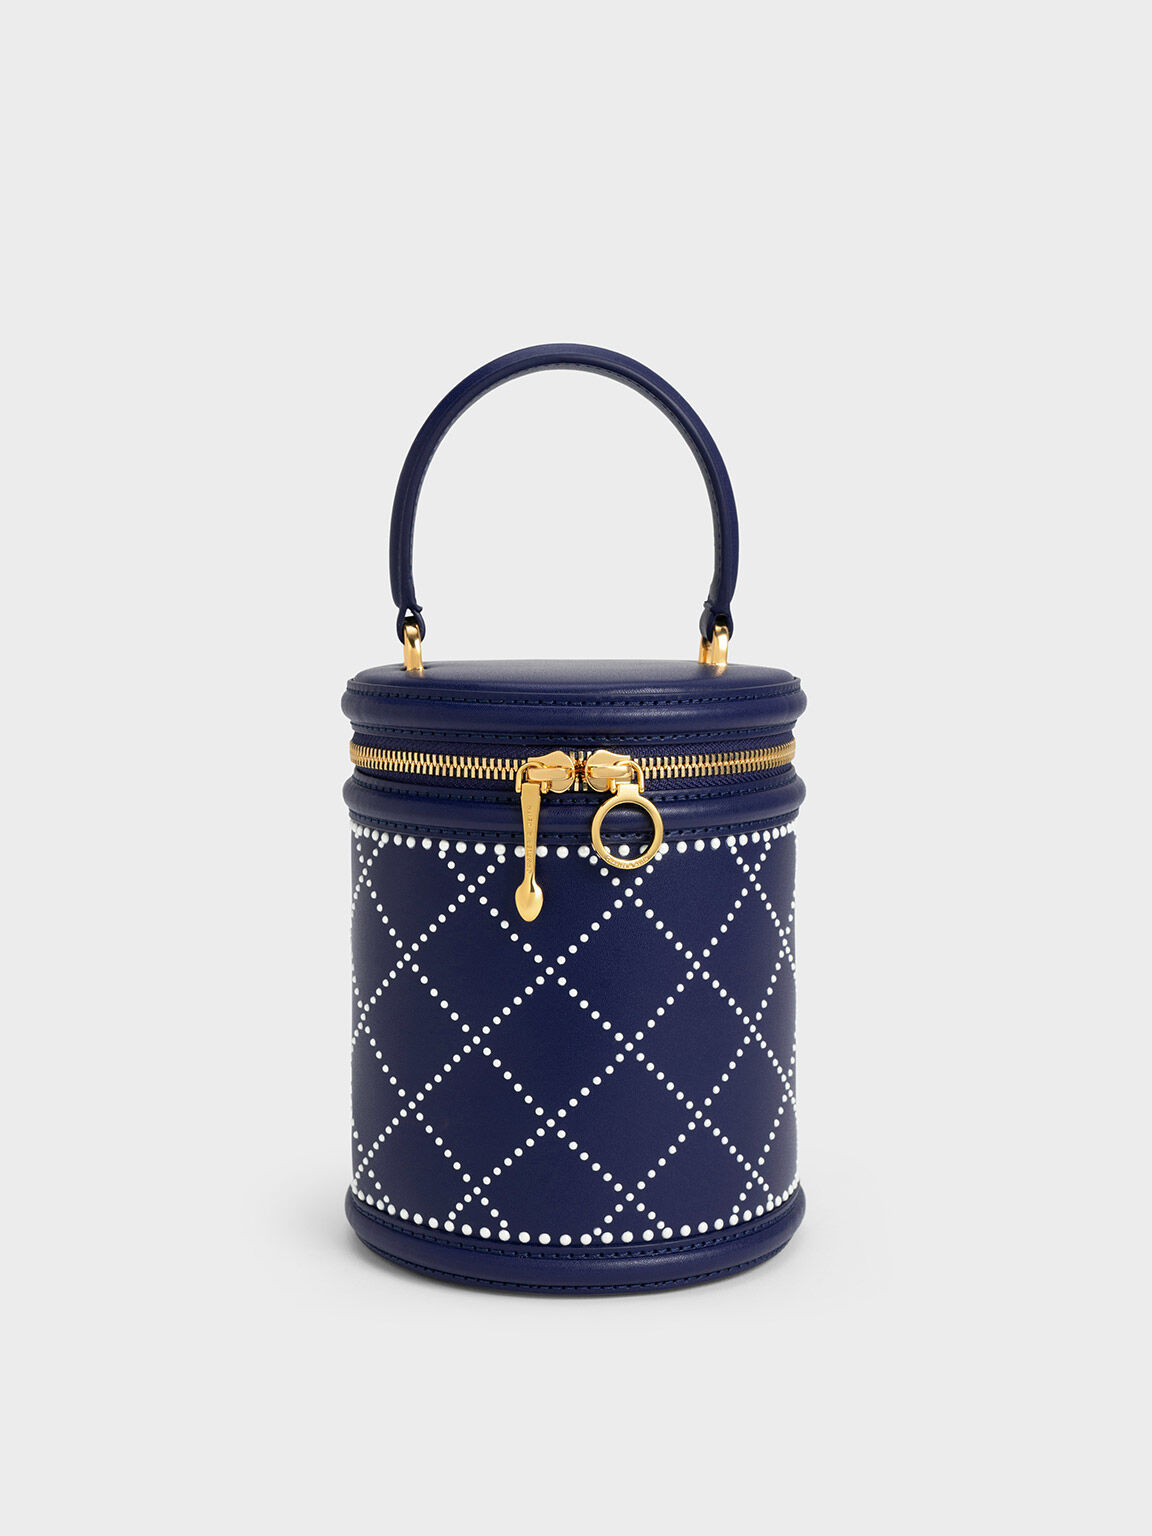 Marietta 菱格紋水桶包, 海軍藍, hi-res